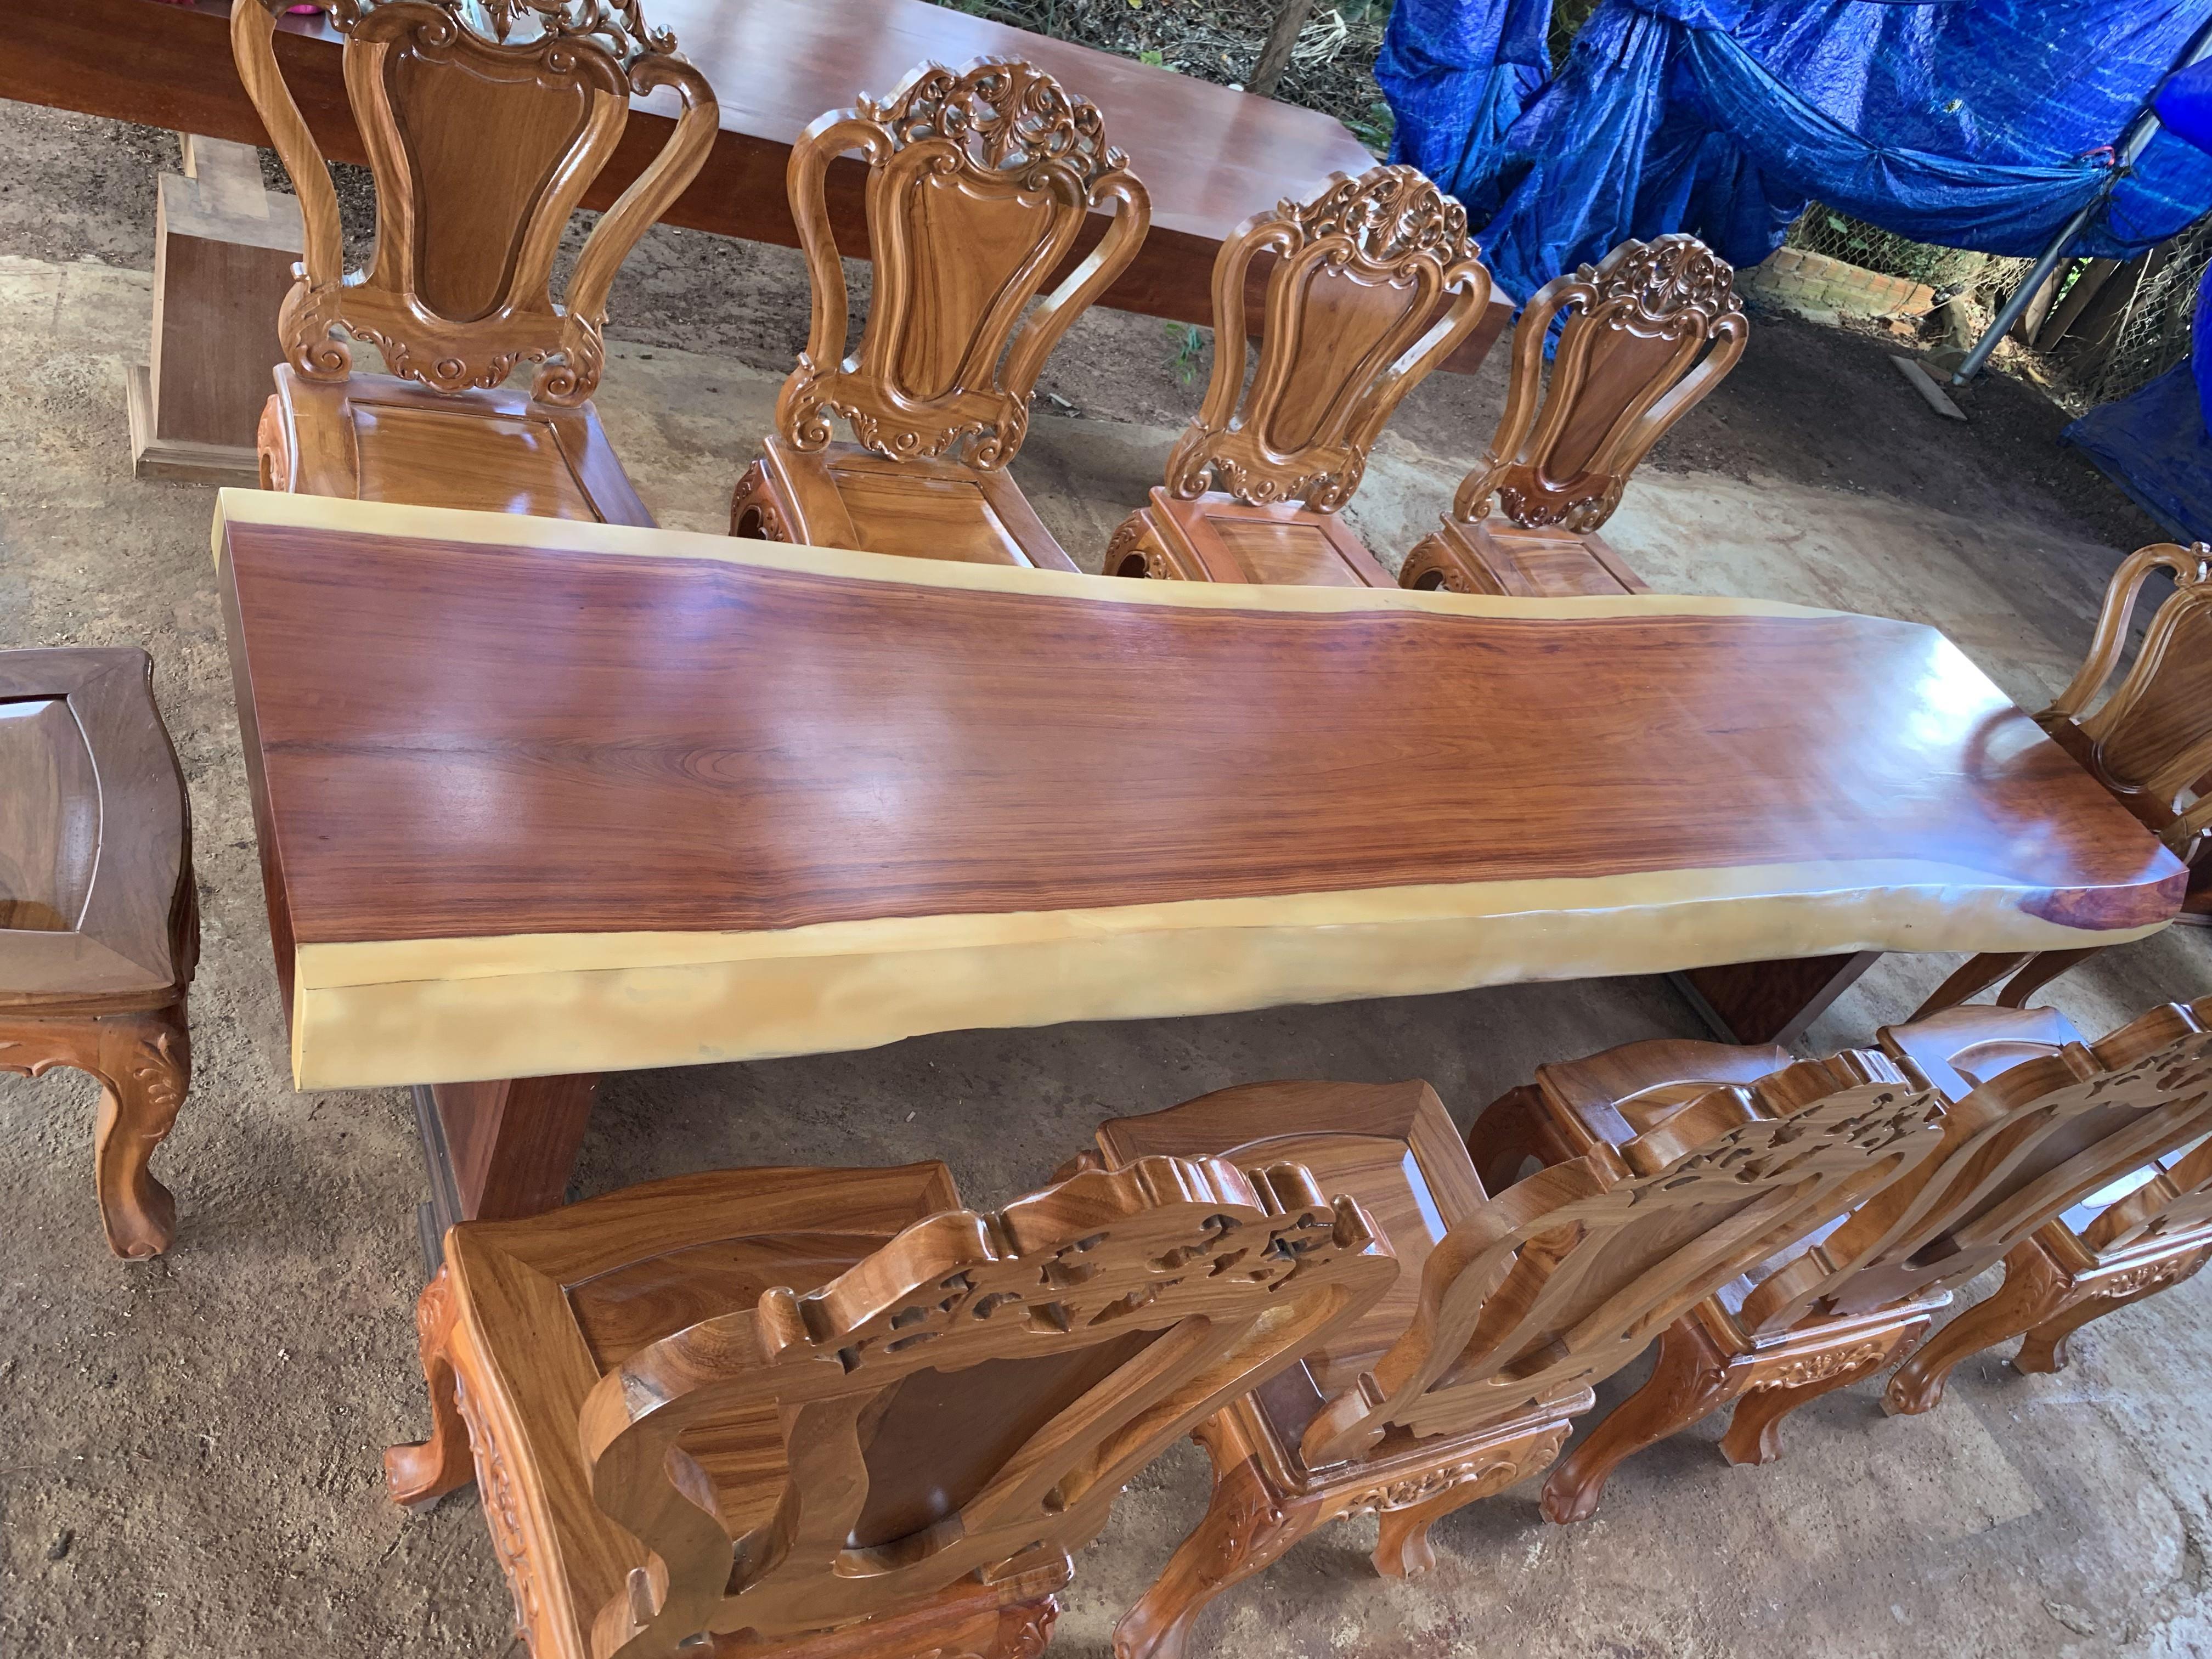 Mặt bàn gỗ Cẩm nguyên khối, ghế gỗ Louis kate